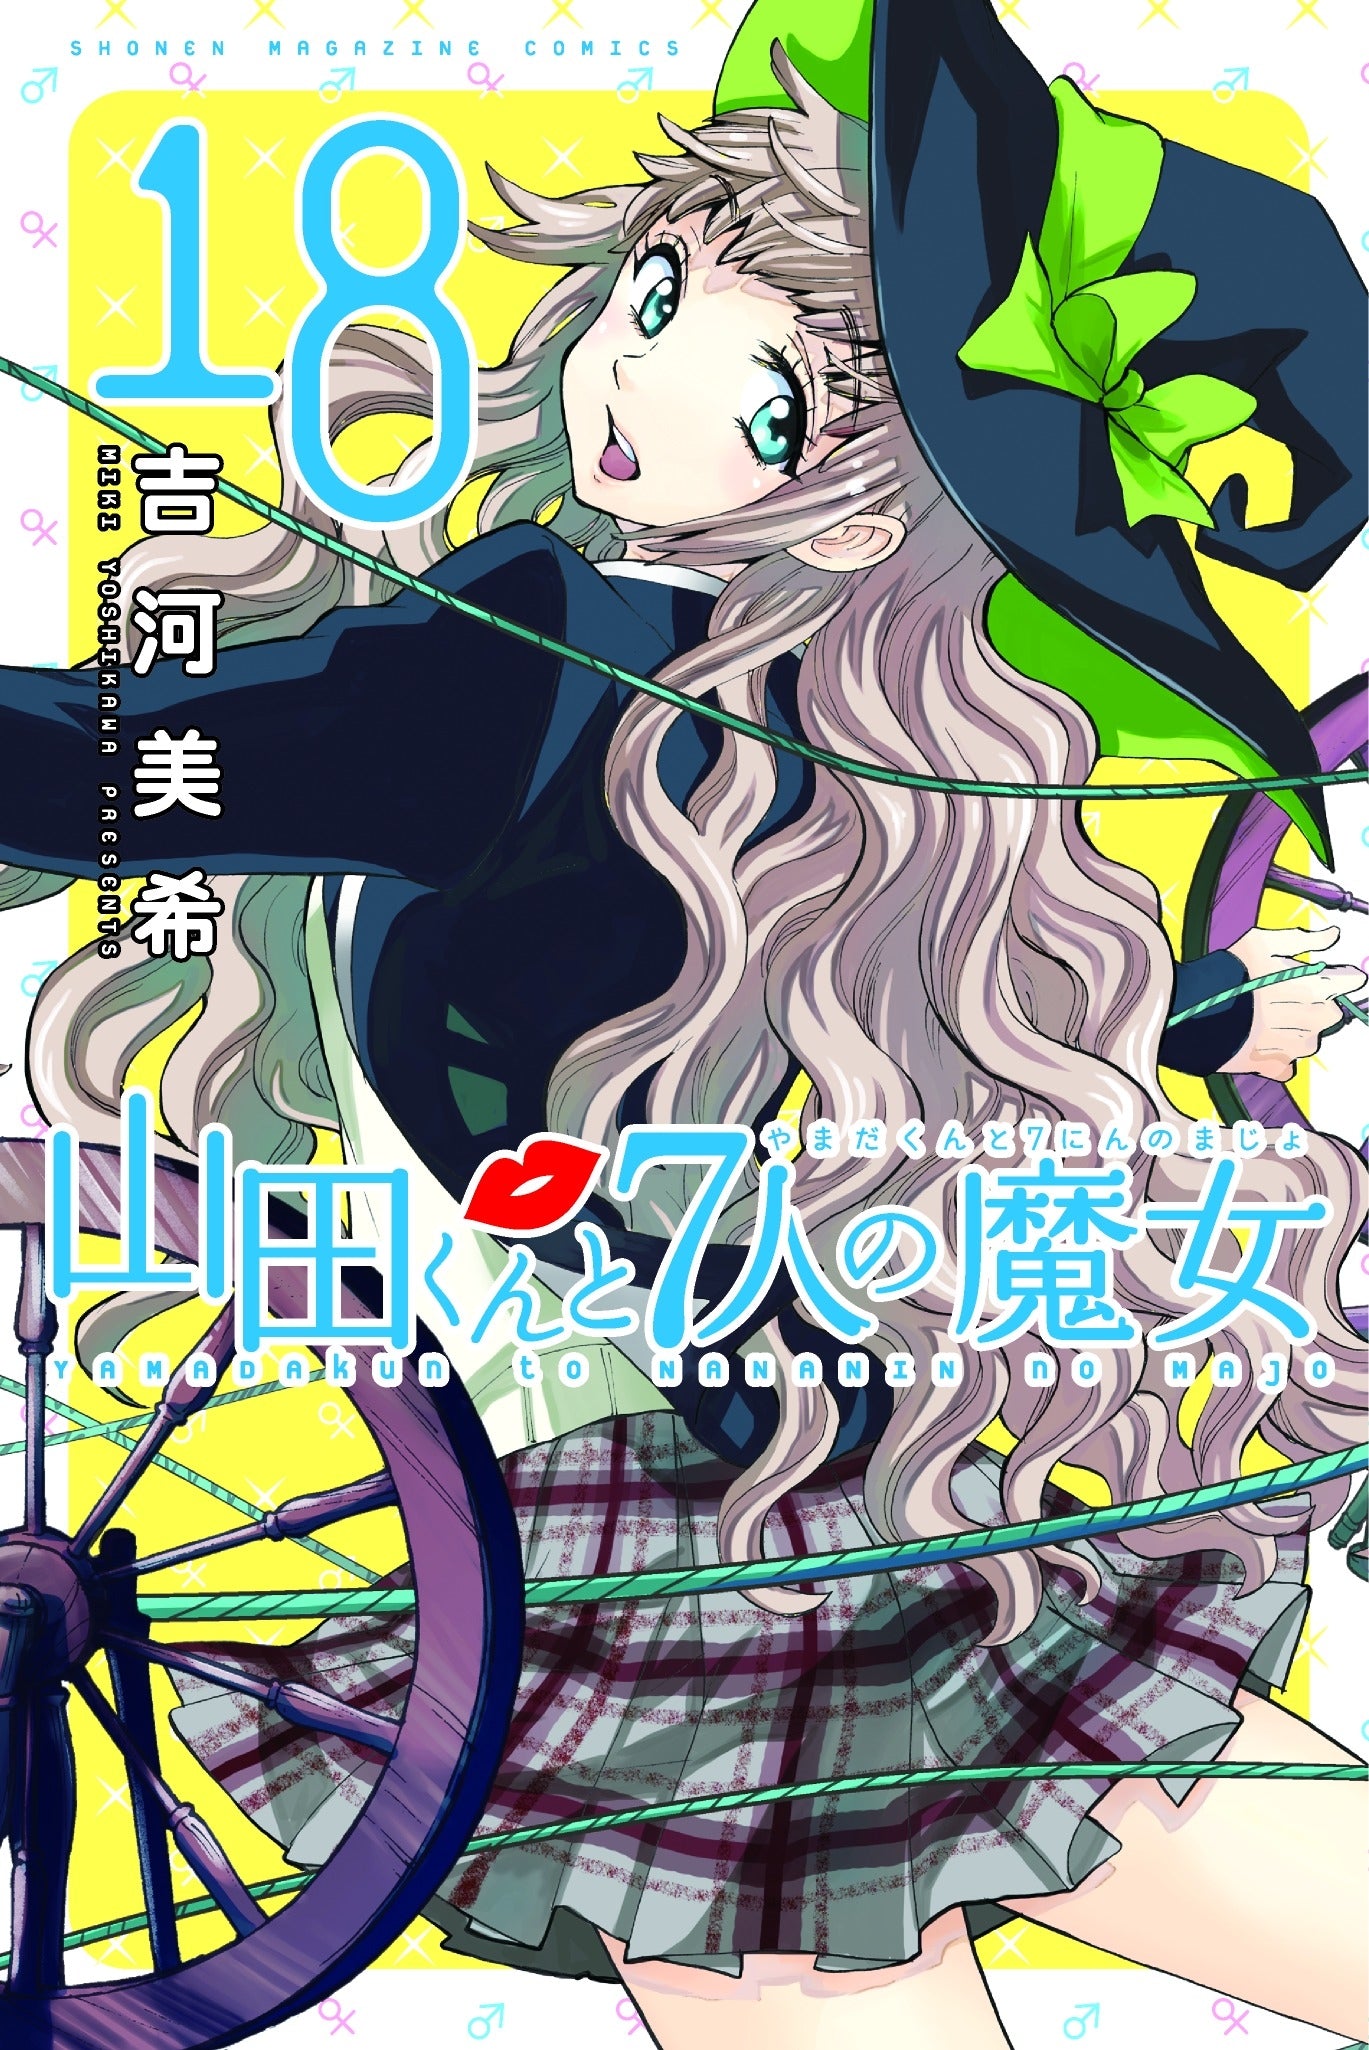 Yamada-kun and the Seven Witches 19-20 - Manga Warehouse